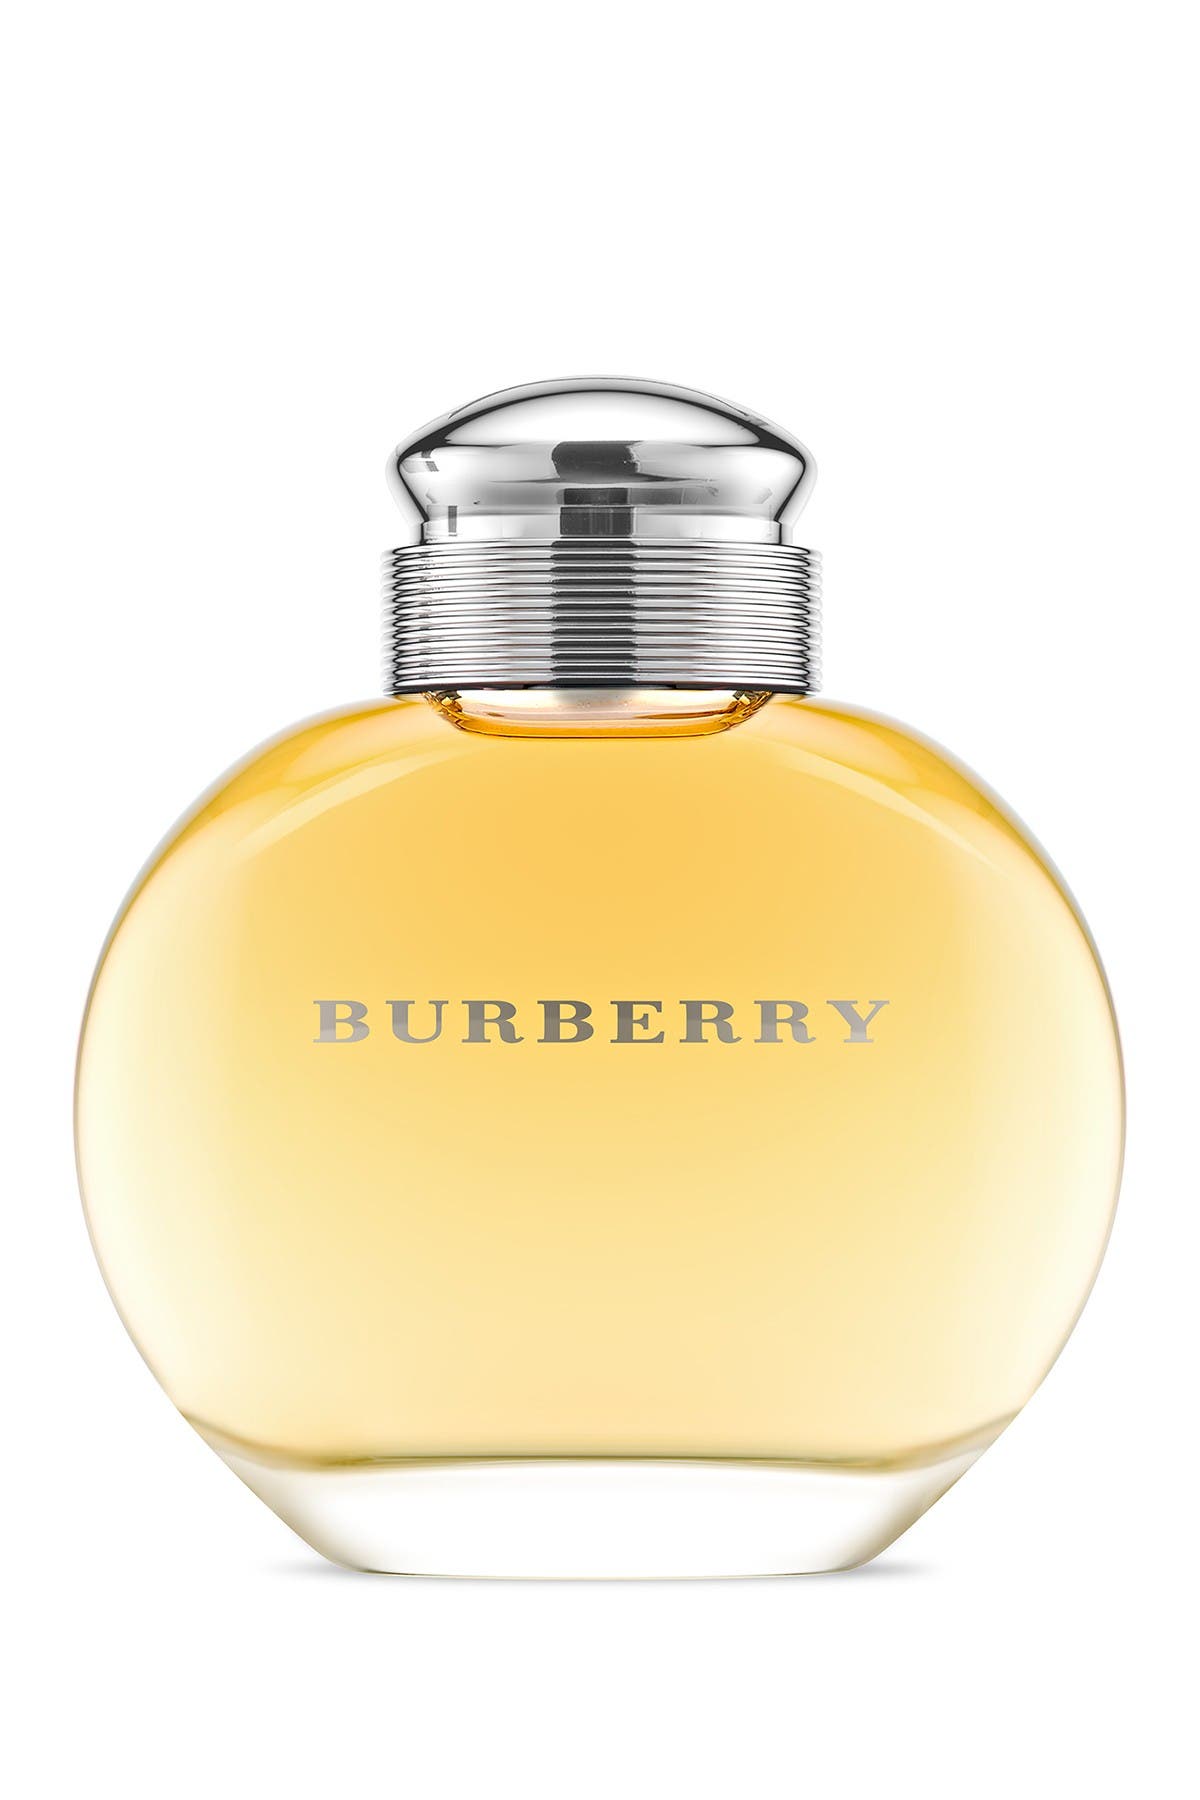 burberry girl perfume kohls